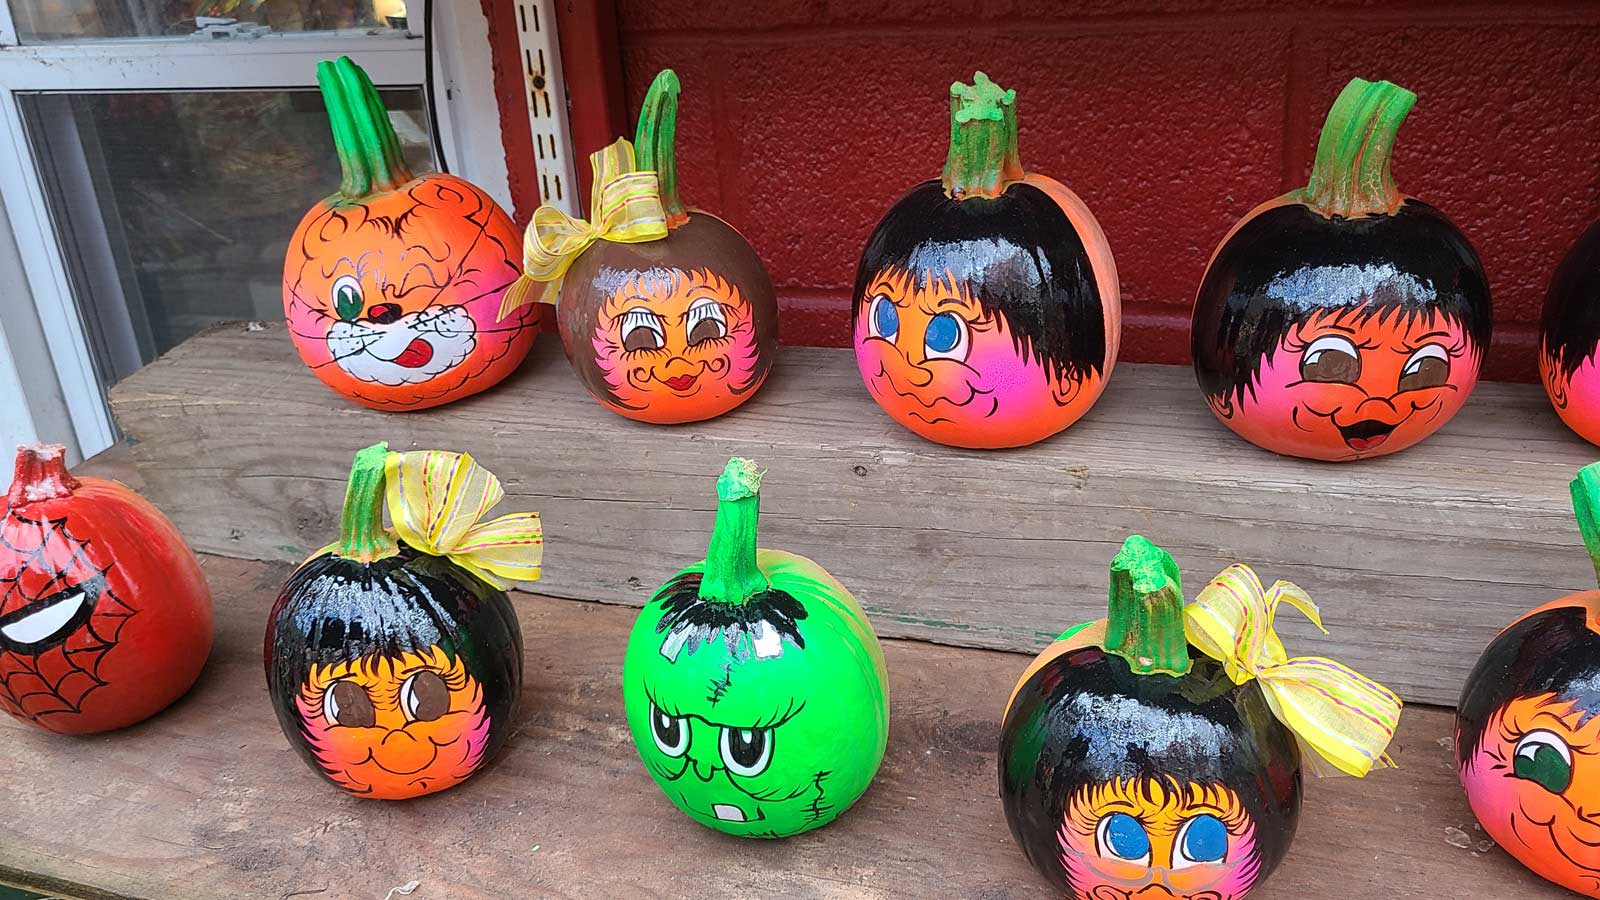 Painted Pumpkins